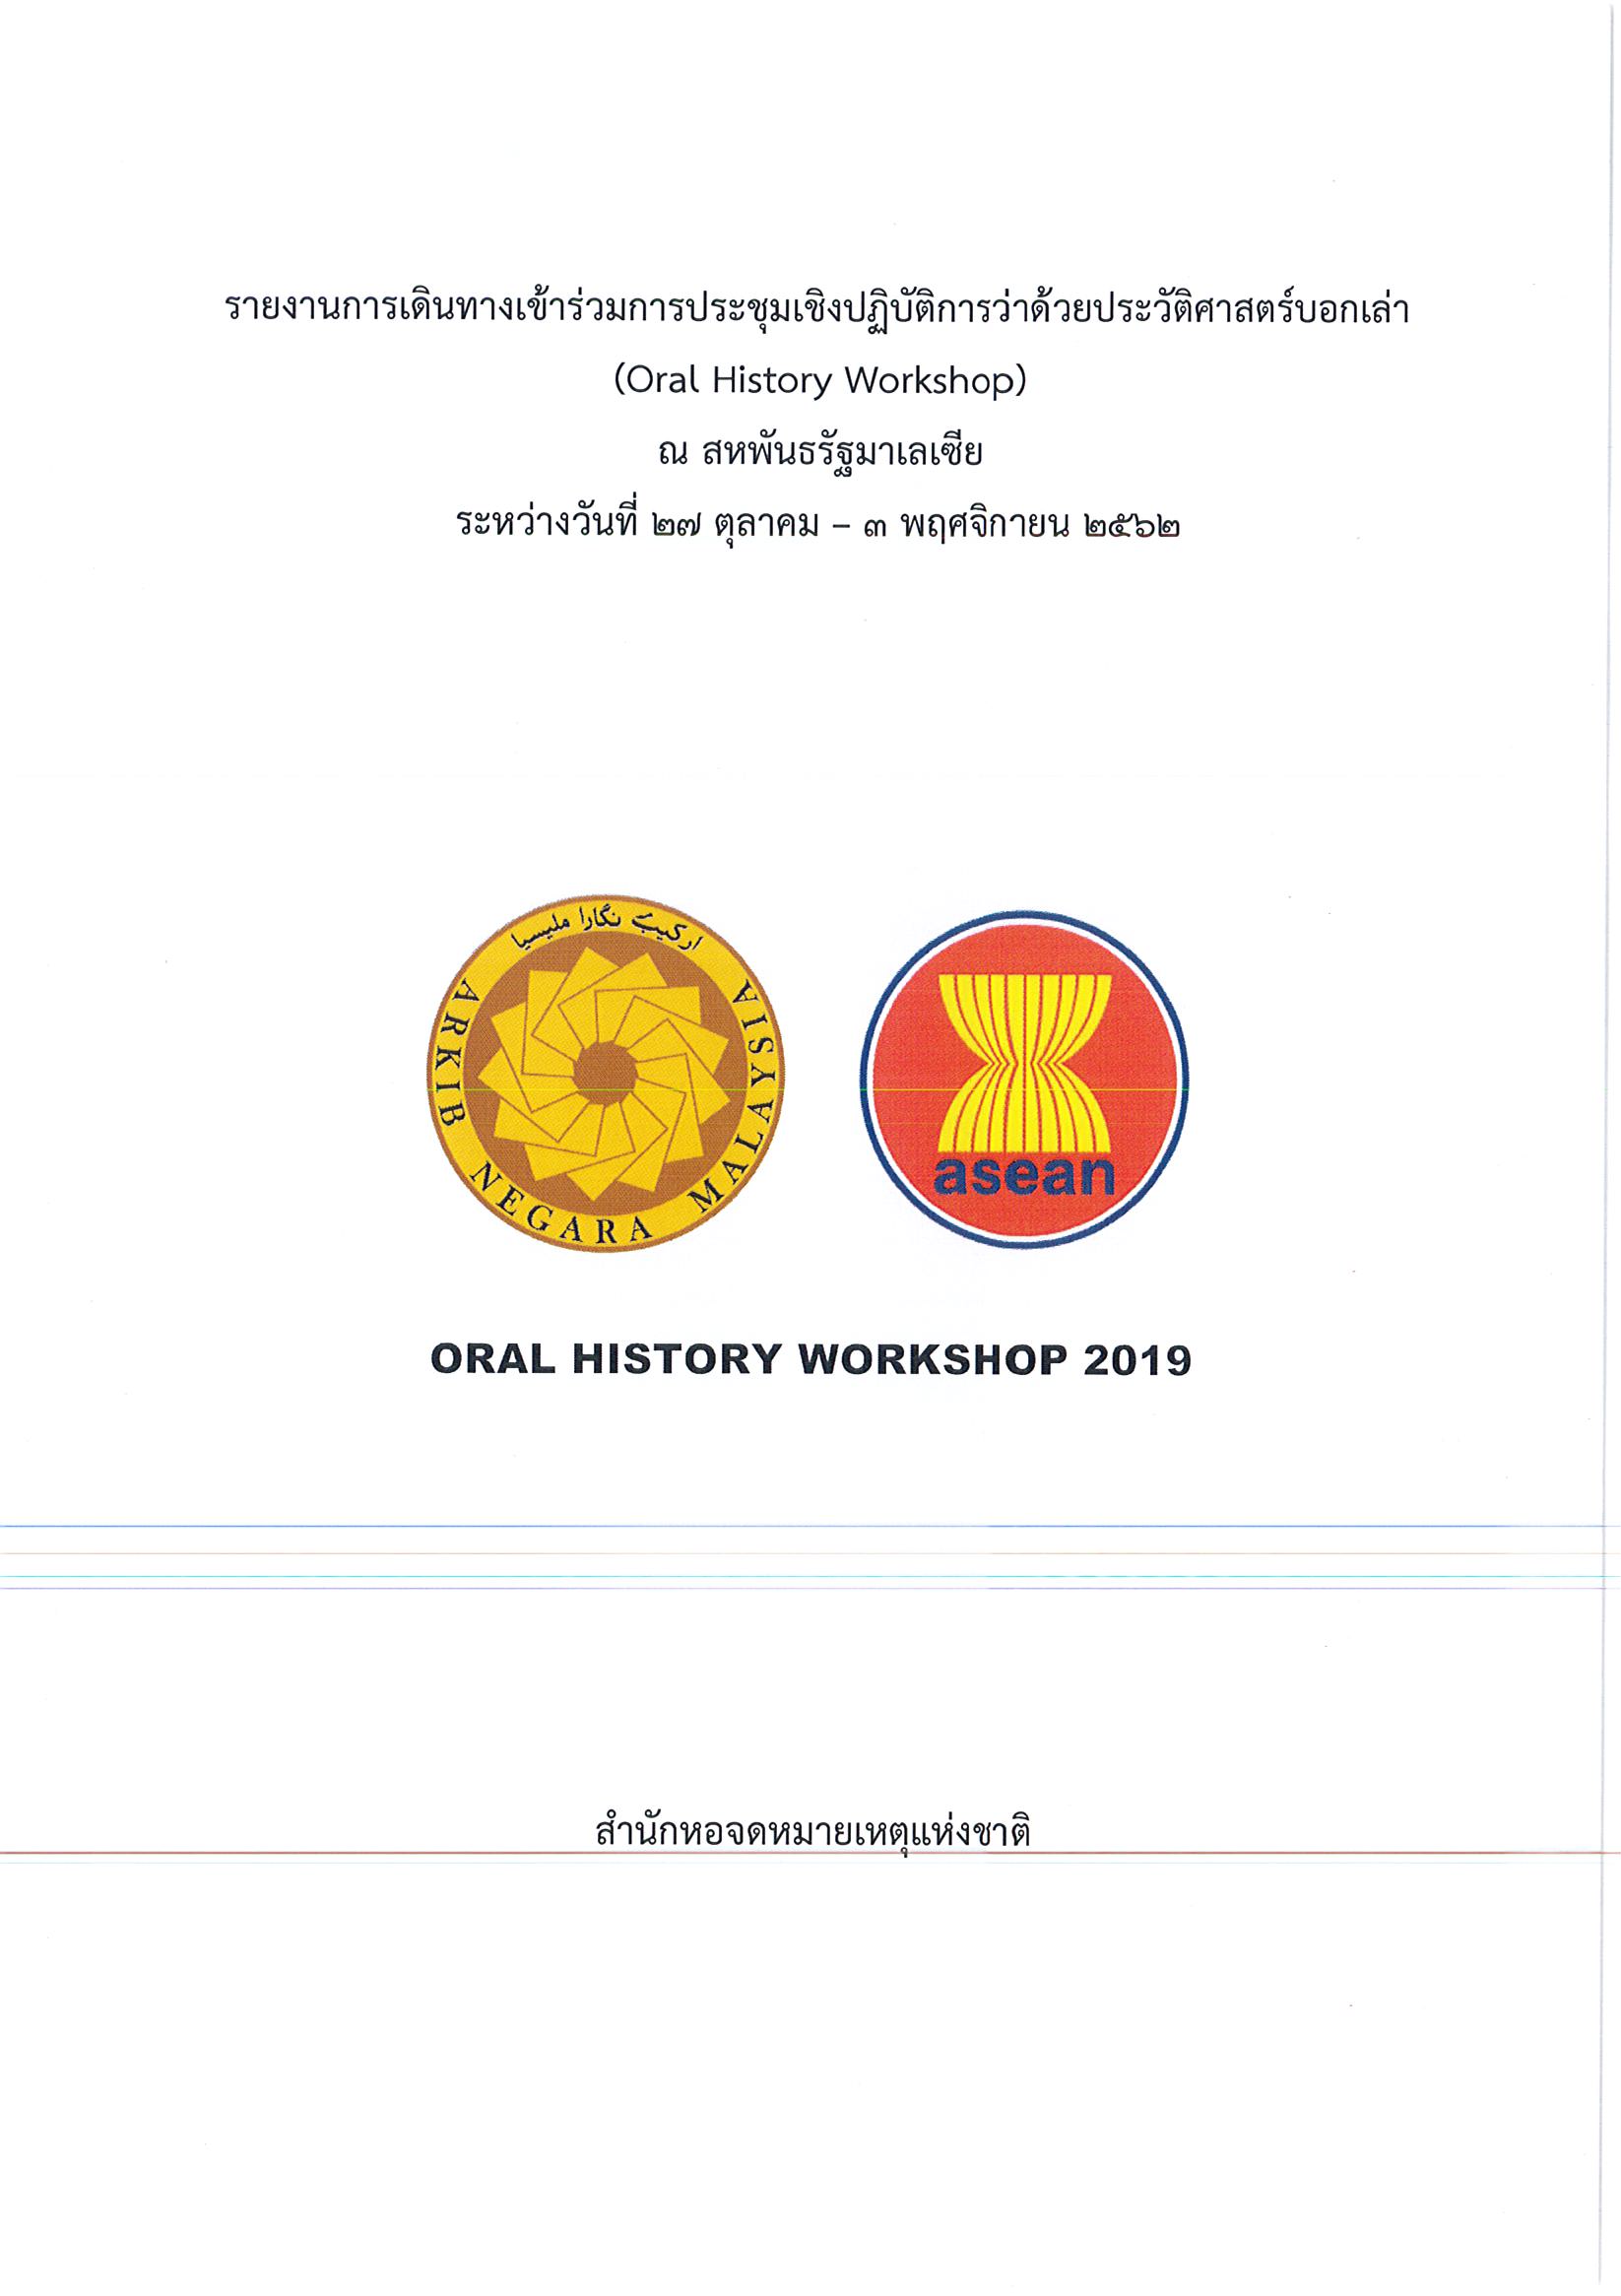 รายงานการเดินทางไปราชการ ณ สมาพันธรัฐมาเลเซีย ระหว่างวันที่ 27 ตุลาคม – 3 พฤศจิกายน 2562 โครงการประชุมเชิงปฏิบัติการว่าด้วยประวัติศาสตร์บอกเล่า